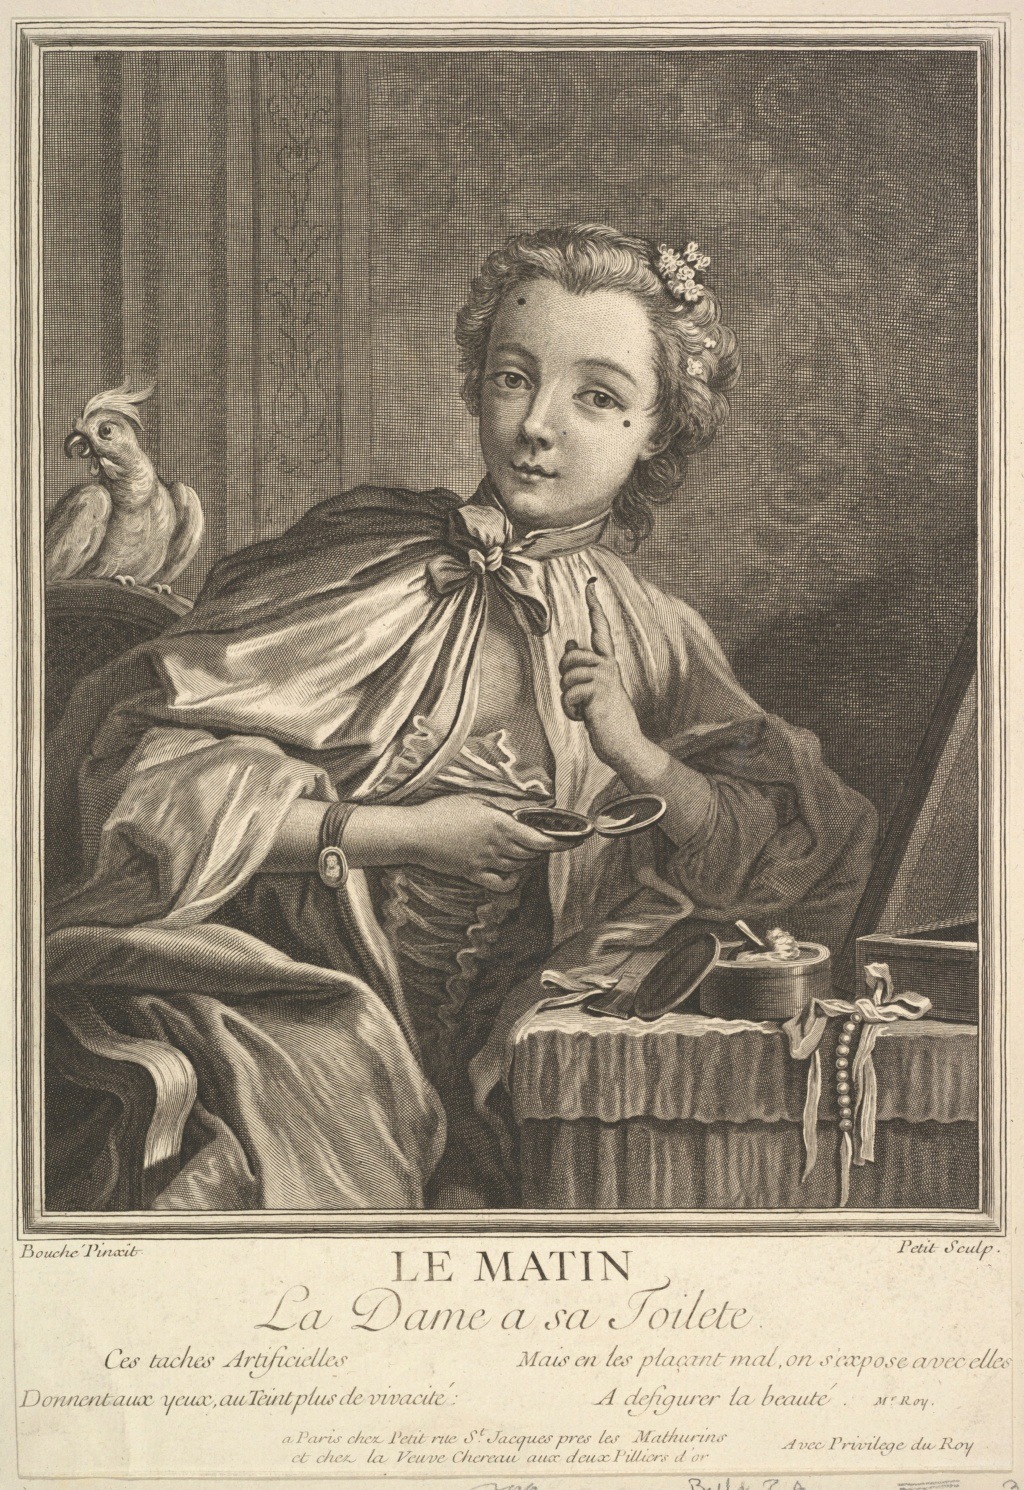 Soins de beauté, maquillage, et mouches au XVIIIe siècle - Page 5 Dp826310